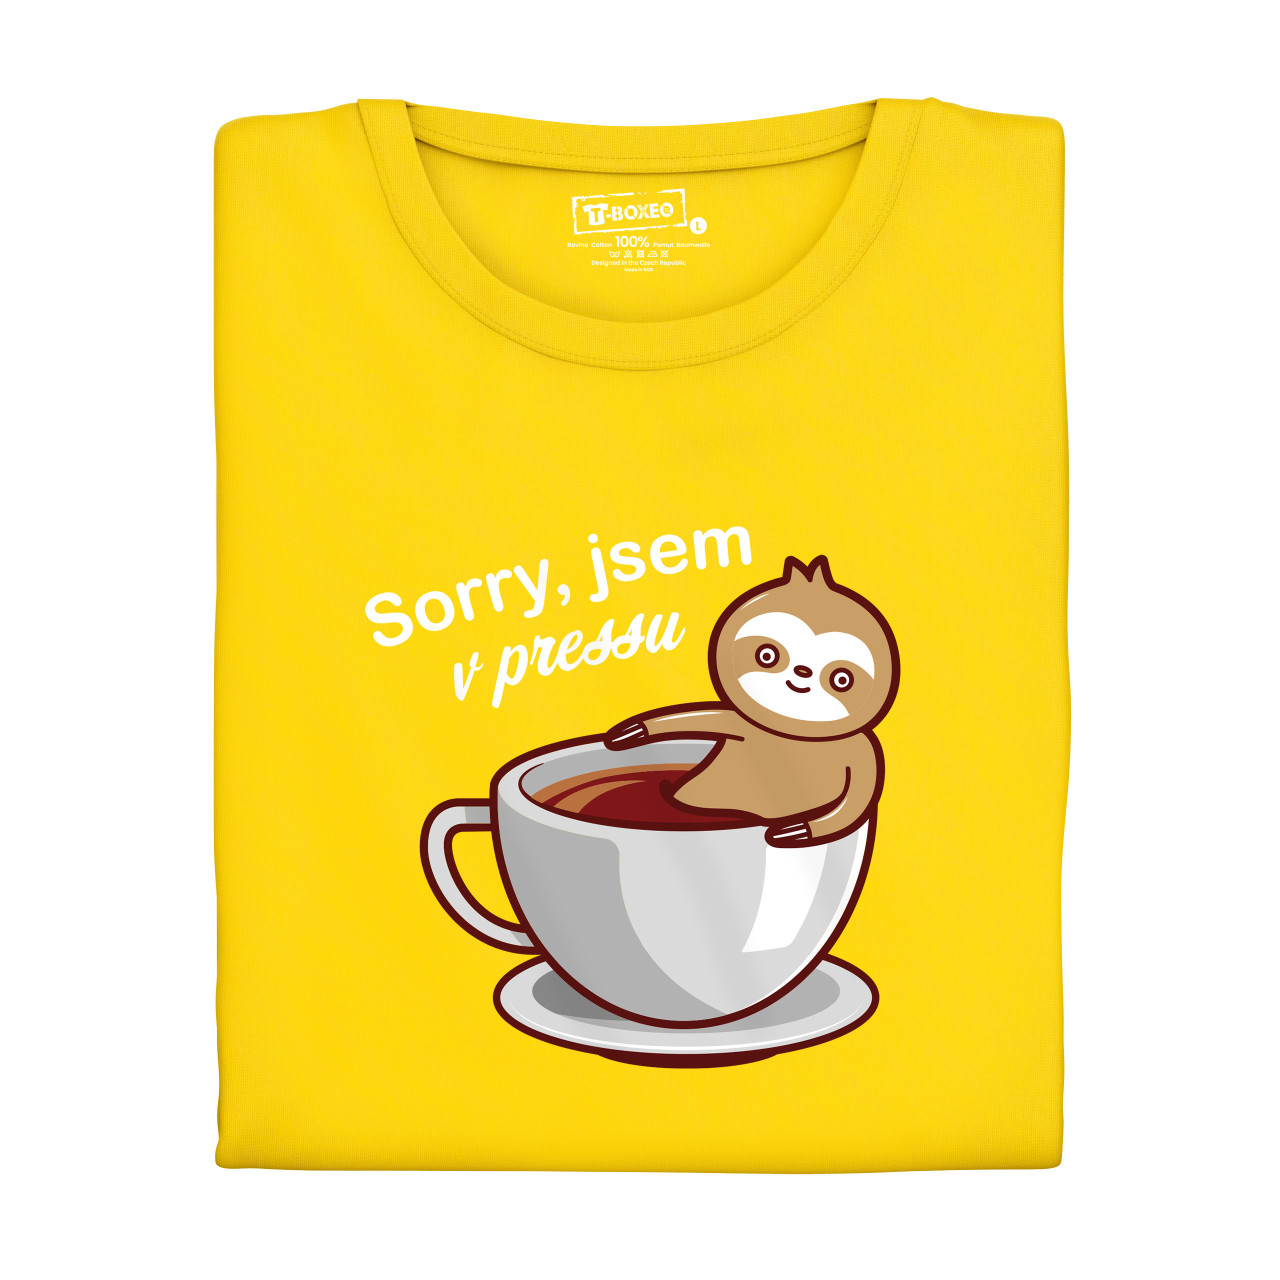 Pánské tričko s potiskem “Sorry, jsem v pressu”